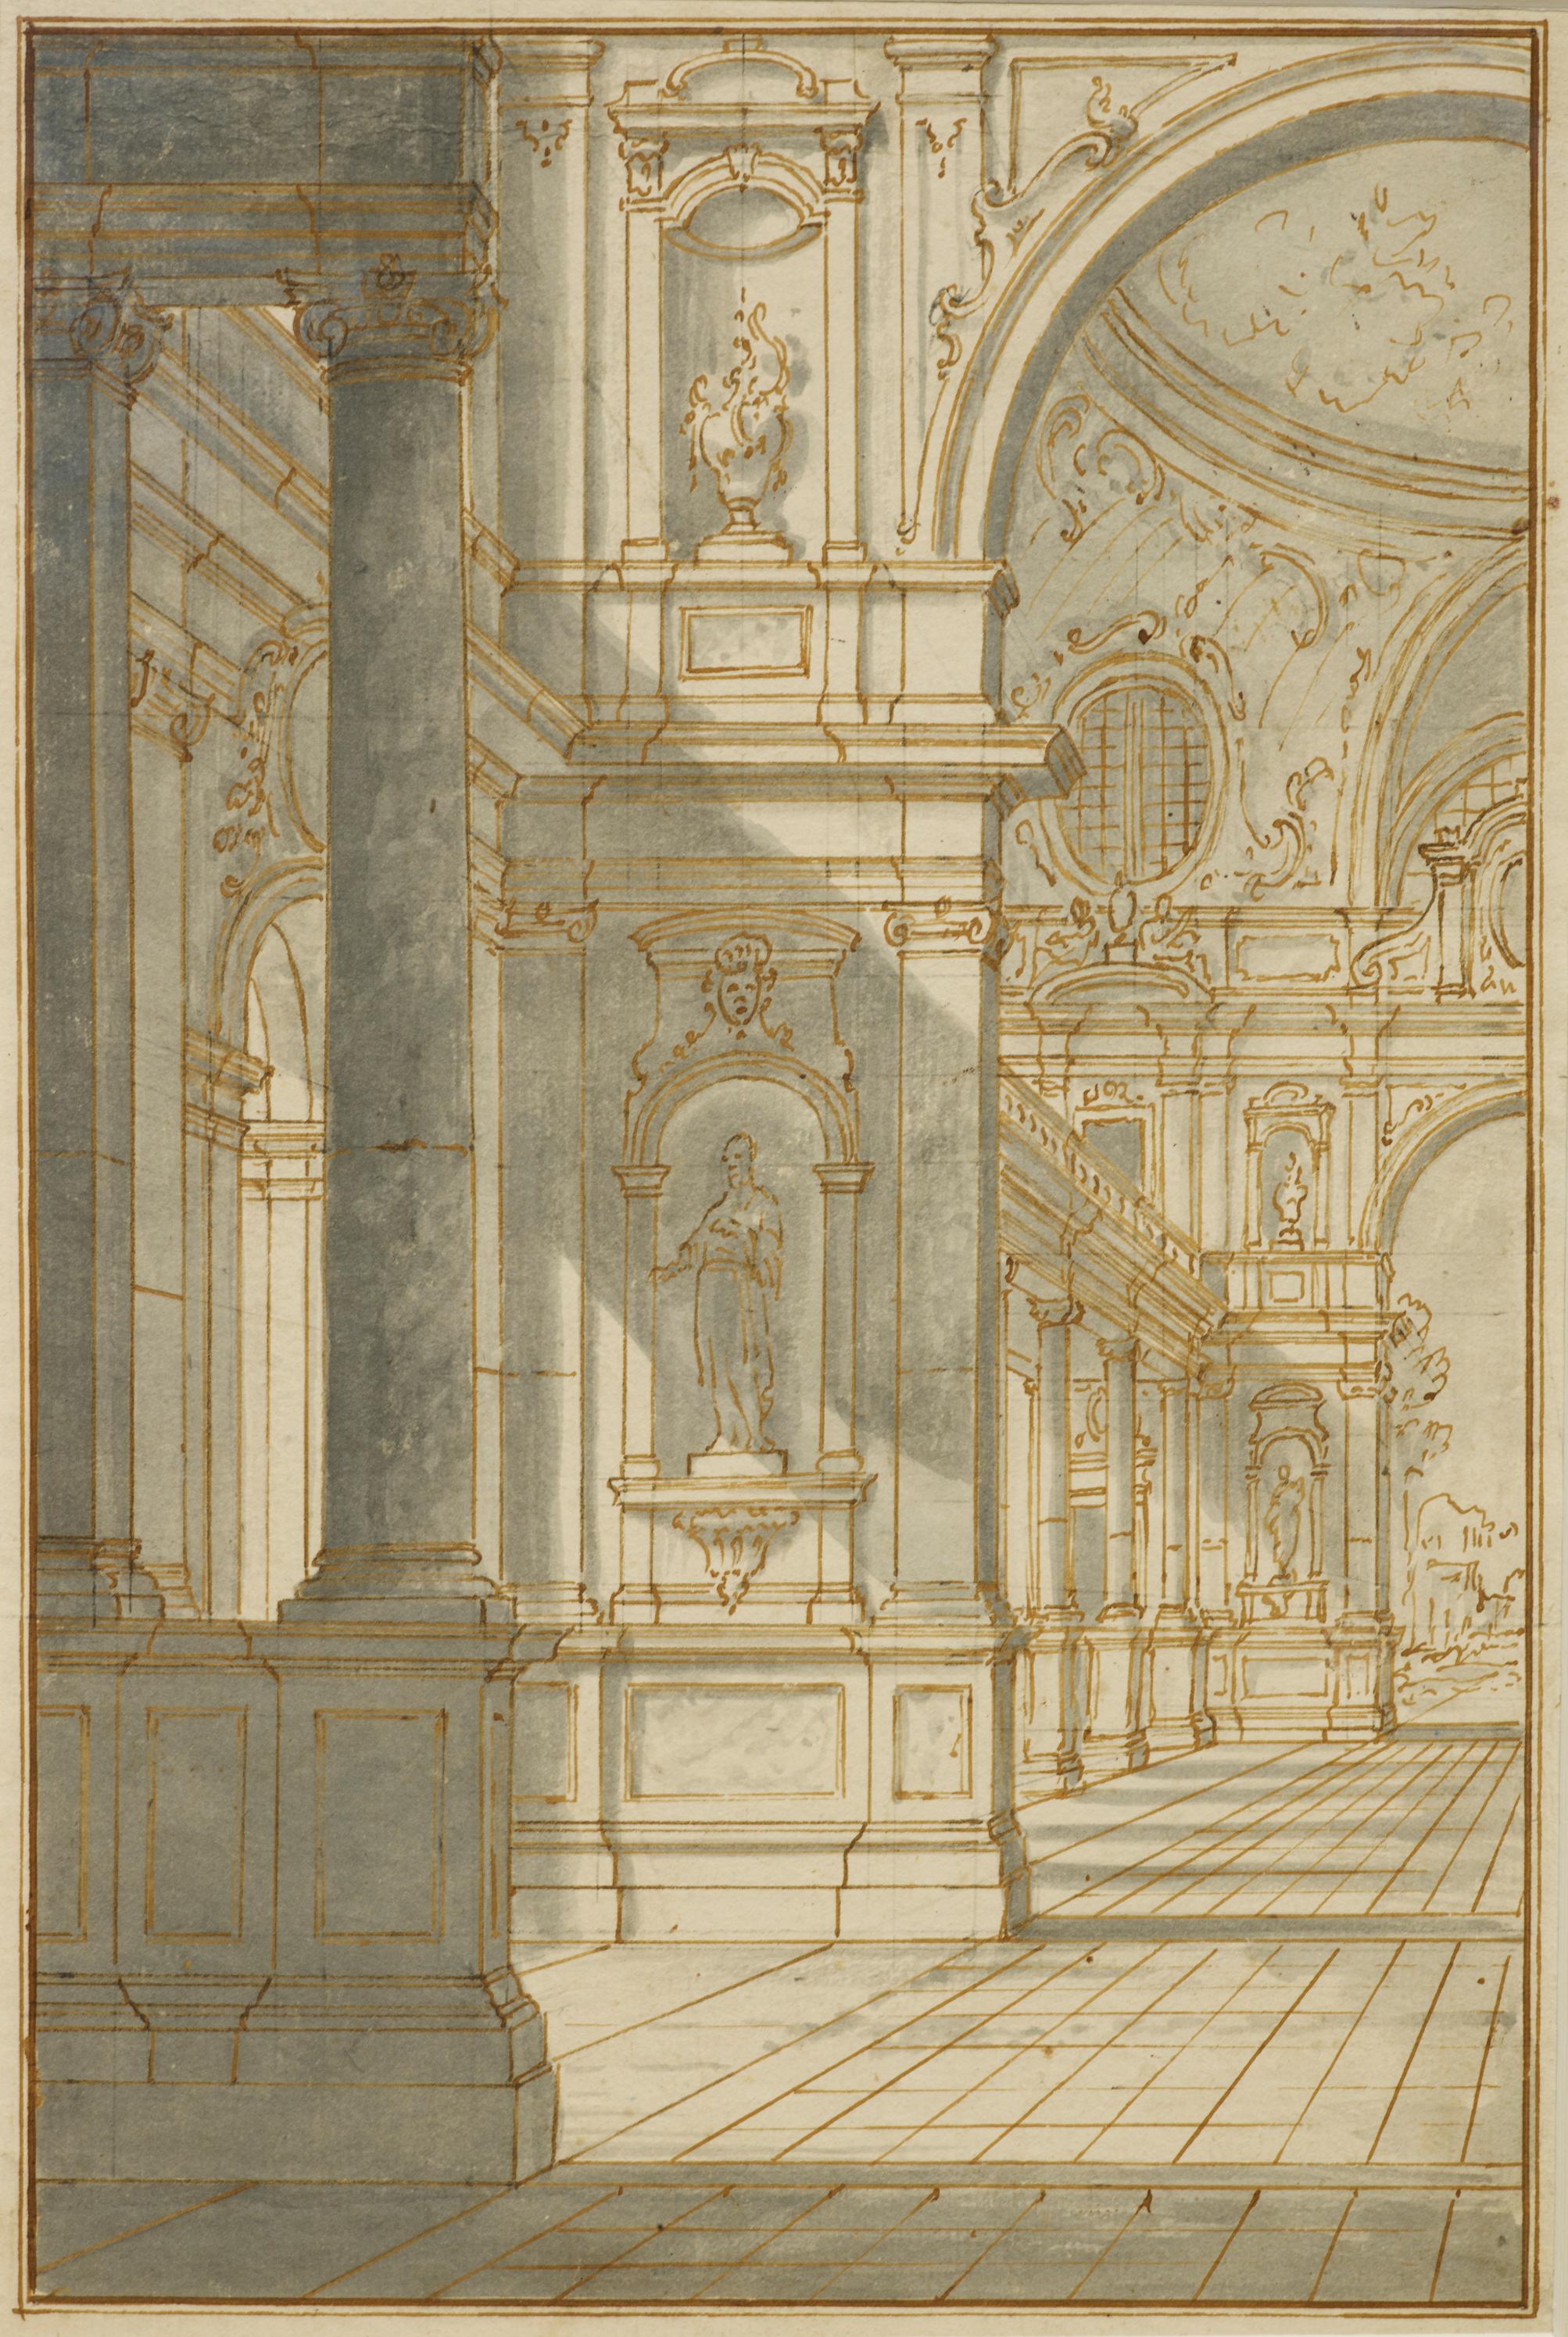 Die Technik dieser leuchtenden architektonischen Zeichnung mit ihrer strengen Perspektive ist perfekt repräsentativ für die Kreationen der Vedutisten der venezianischen Schule des 18. Jahrhunderts. Ähnliche Zeichnungen unterstützen die Zuschreibung